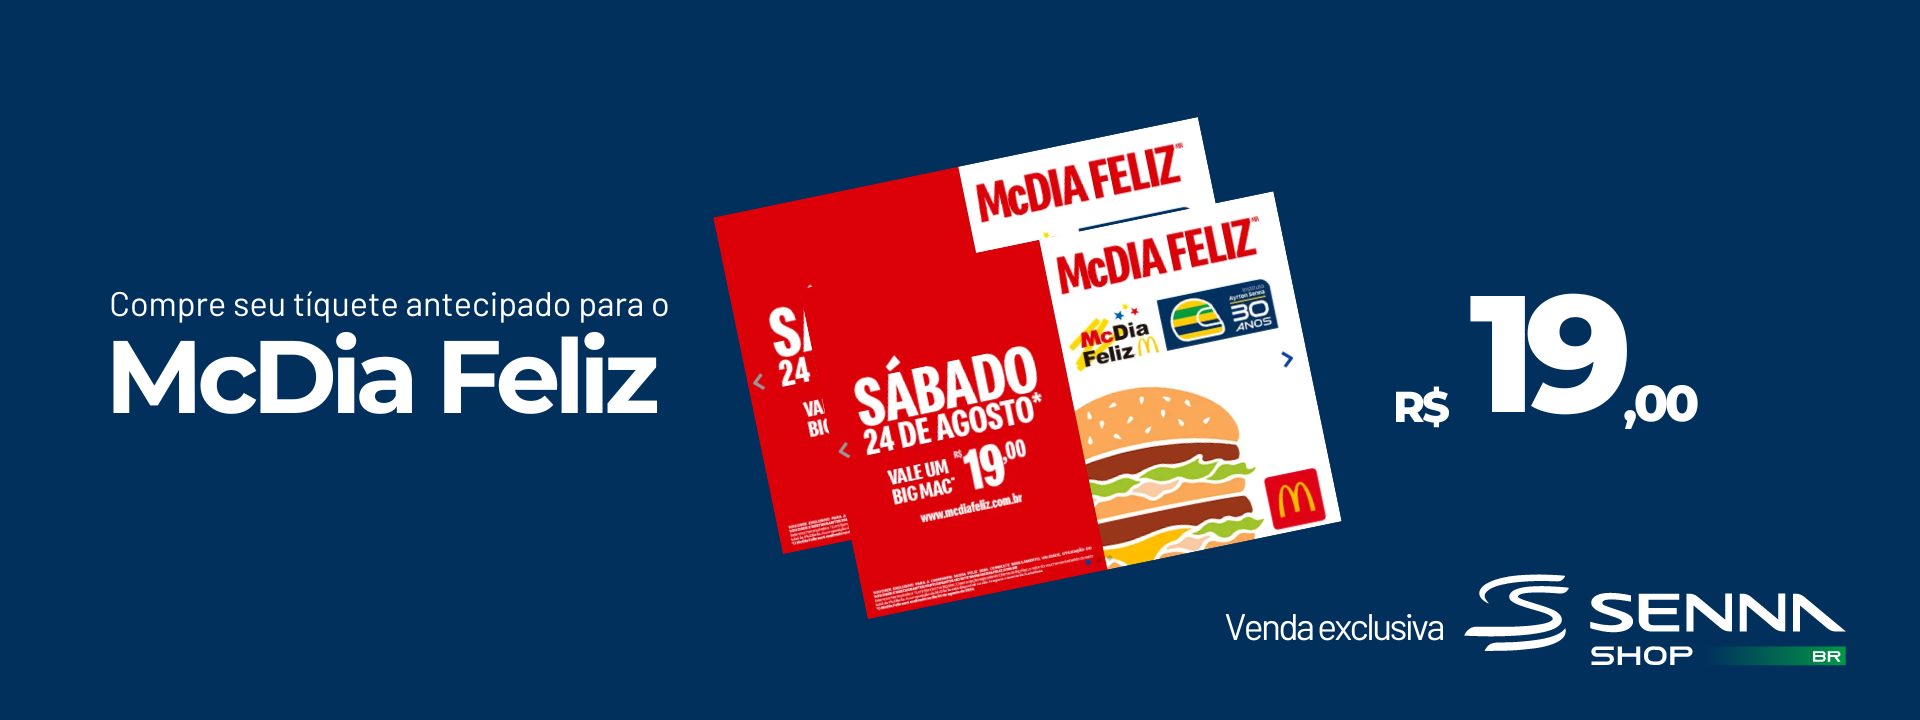 Imagem promocional do evento "McDia Feliz" do McDonald's, com ingressos no valor de R$ 19,00, disponíveis para compra exclusiva no Senna Shop em apoio ao Instituto Ayrton Senna.